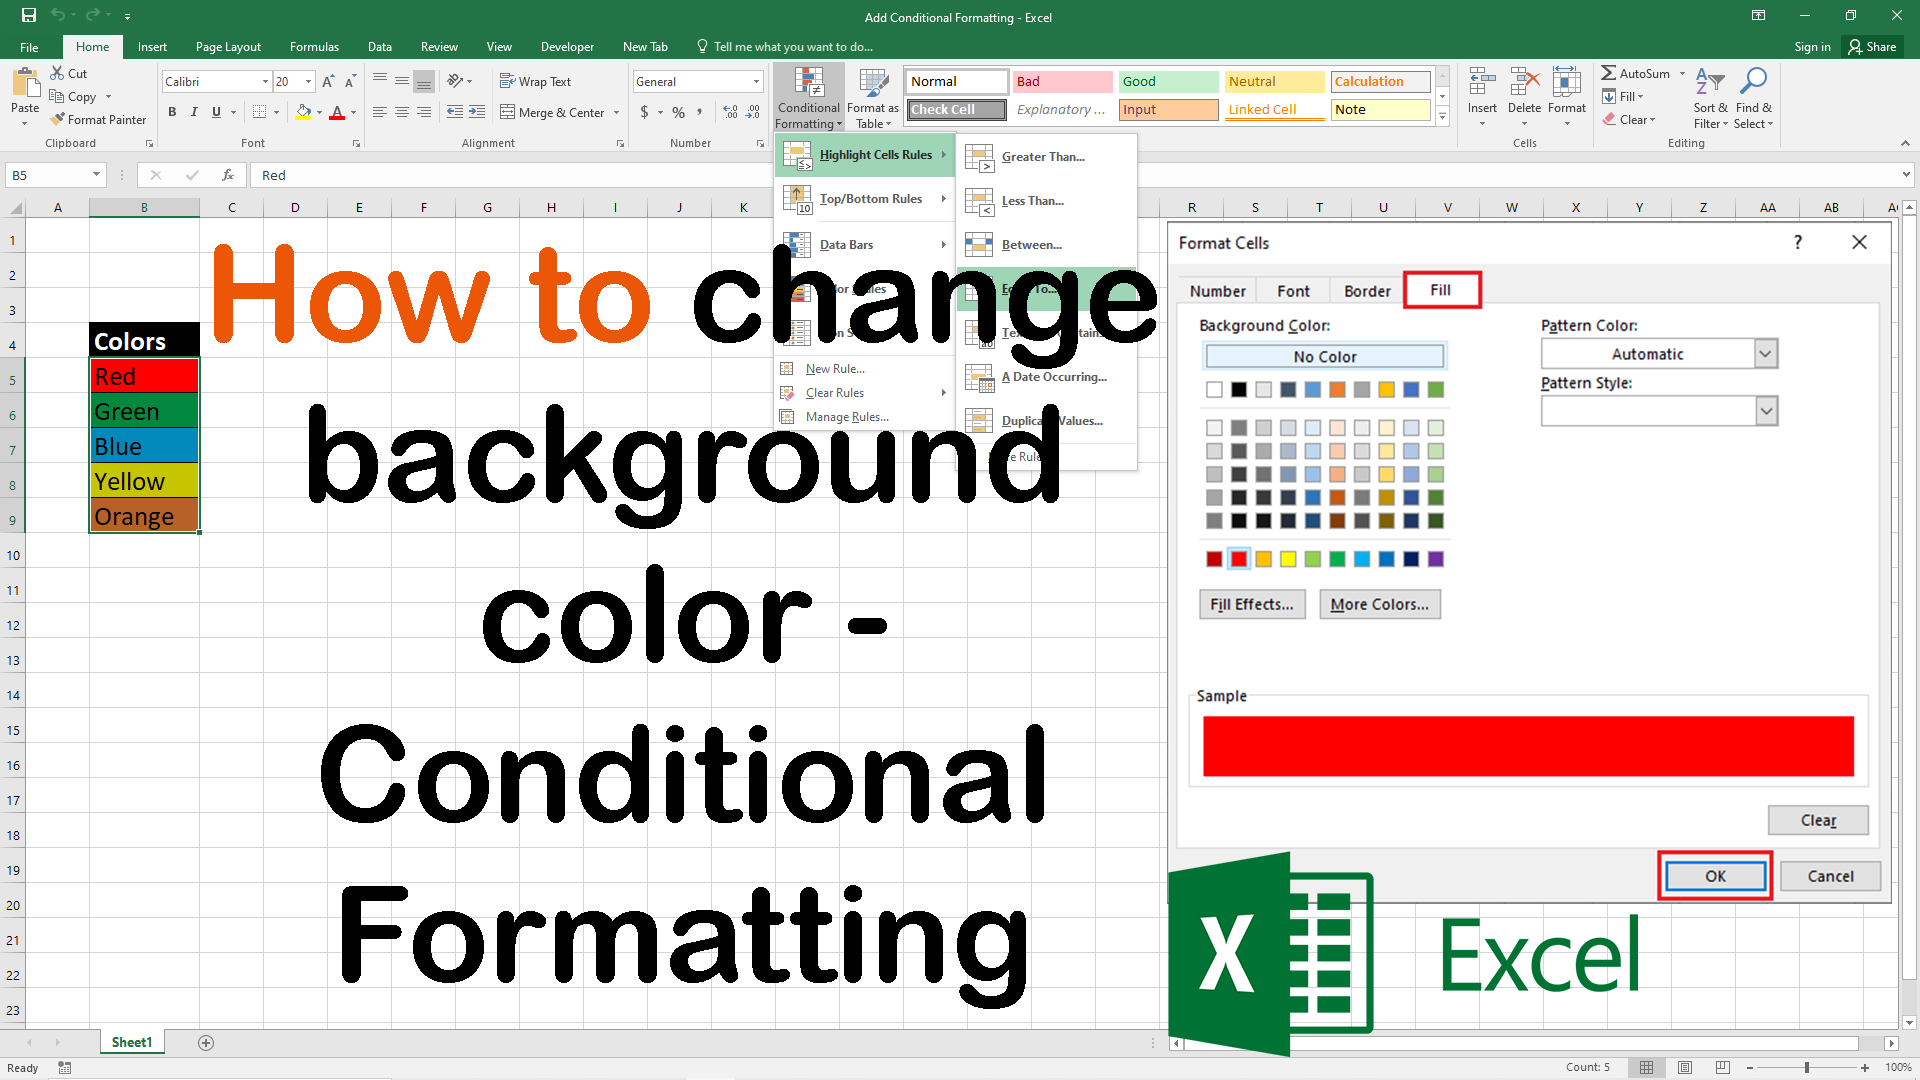 Hướng dẫn thay đổi màu nền của ô dựa trên giá trị trong... Bạn đã bao giờ tìm cách thay đổi màu nền của ô trong Excel dựa trên giá trị của ô đó chưa? Đây là một tính năng rất hữu ích để làm nổi bật những con số quan trọng và giúp bạn trở nên nhanh nhạy hơn trong việc phân tích dữ liệu. Hãy xem hướng dẫn để biết thêm chi tiết nhé!